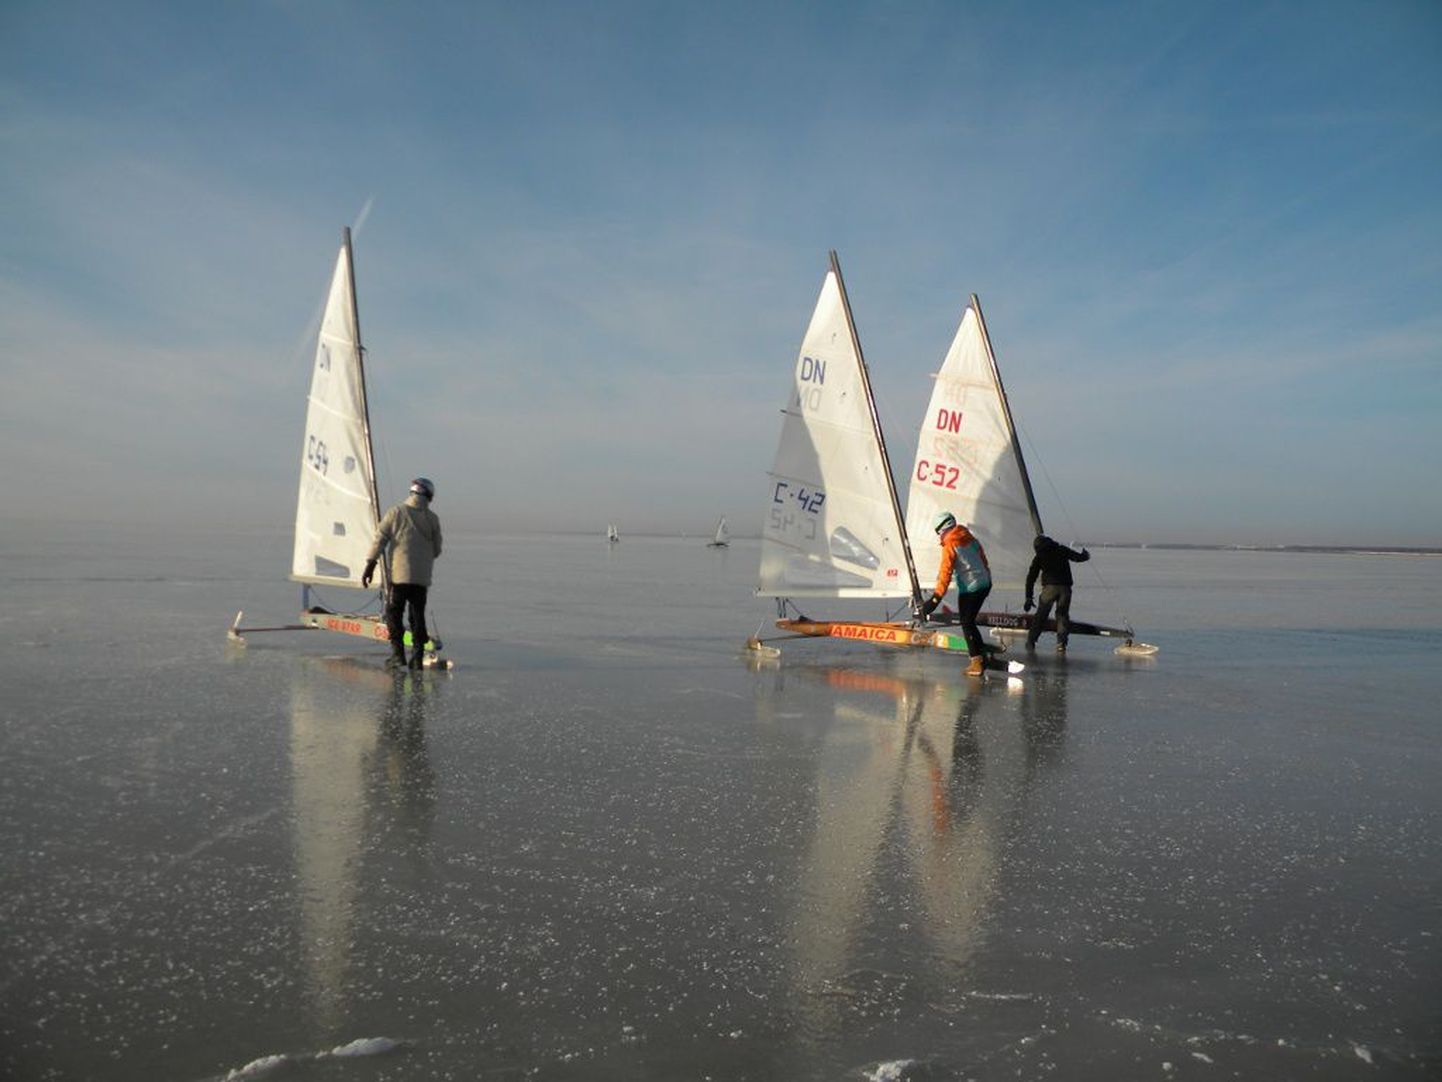 Noored jääpurjetajad treenisid eile Reiu rannas peegelsiledal jääl.